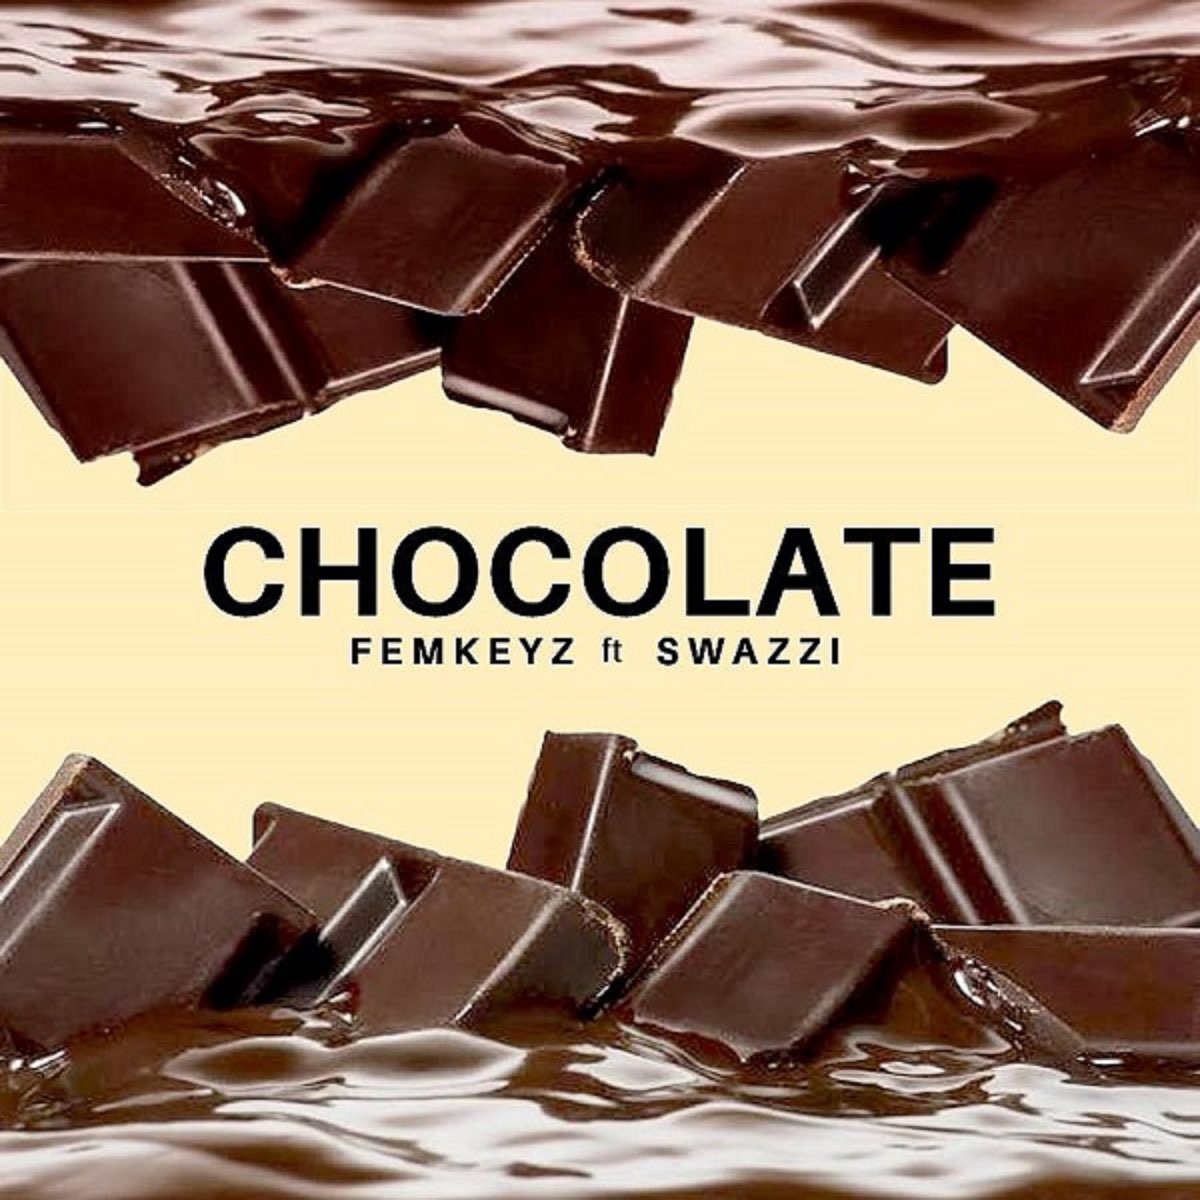 98.0 шоколад слушать. Альбом Chocolate. Альбом с шоколадом. Молочный шоколад композиция. Хит шоколад.